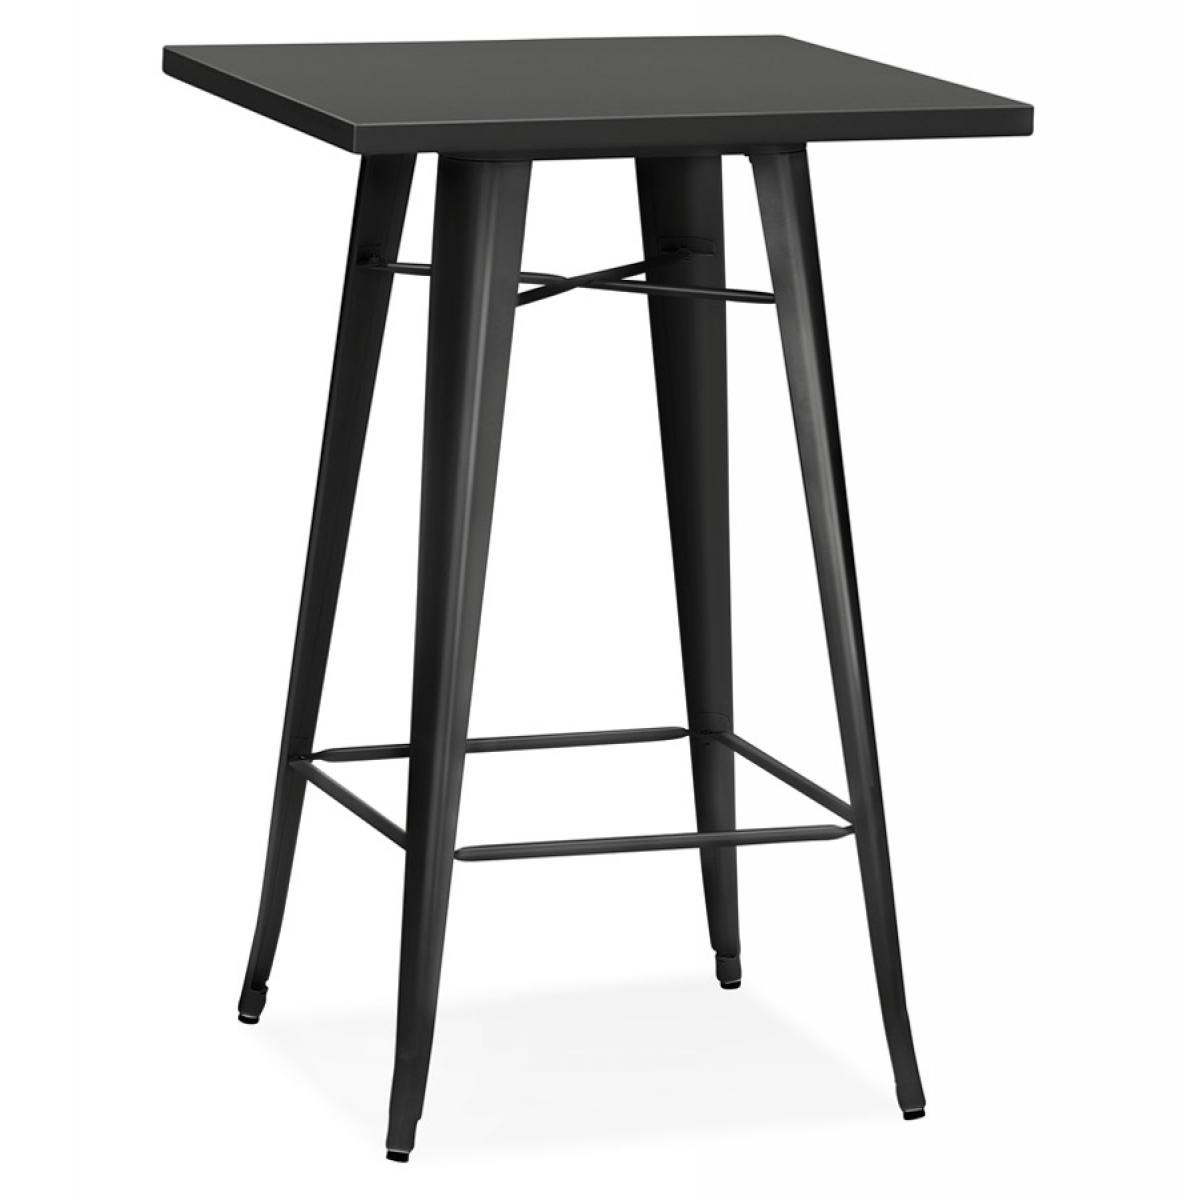 Alterego - Table haute style industriel 'TATY' noire - 70x70 cm - Tables à manger